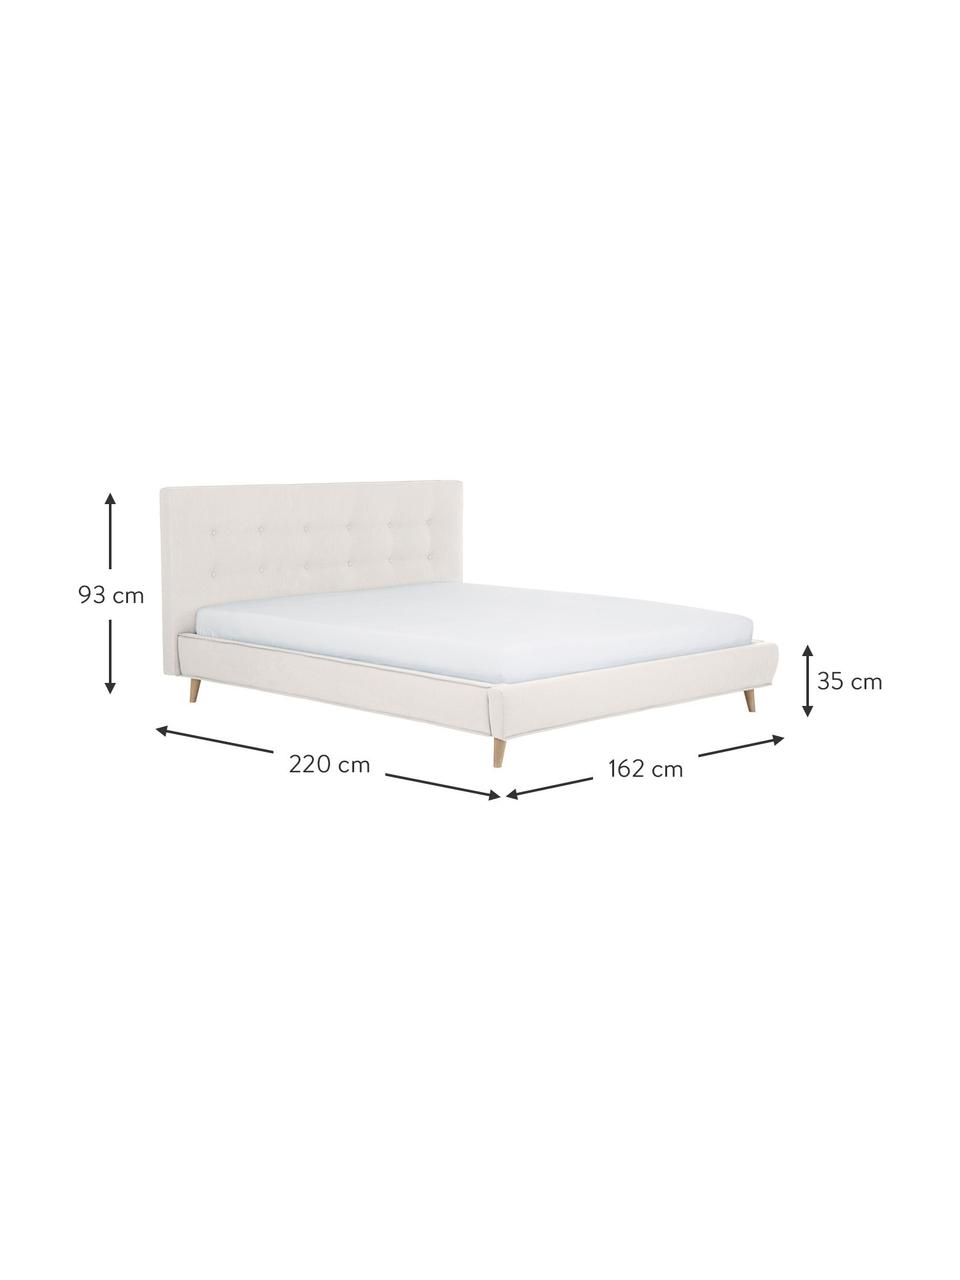 Čalouněná postel s dřevěnými nohami Moon, Greige, Š 140 cm, D 200 cm